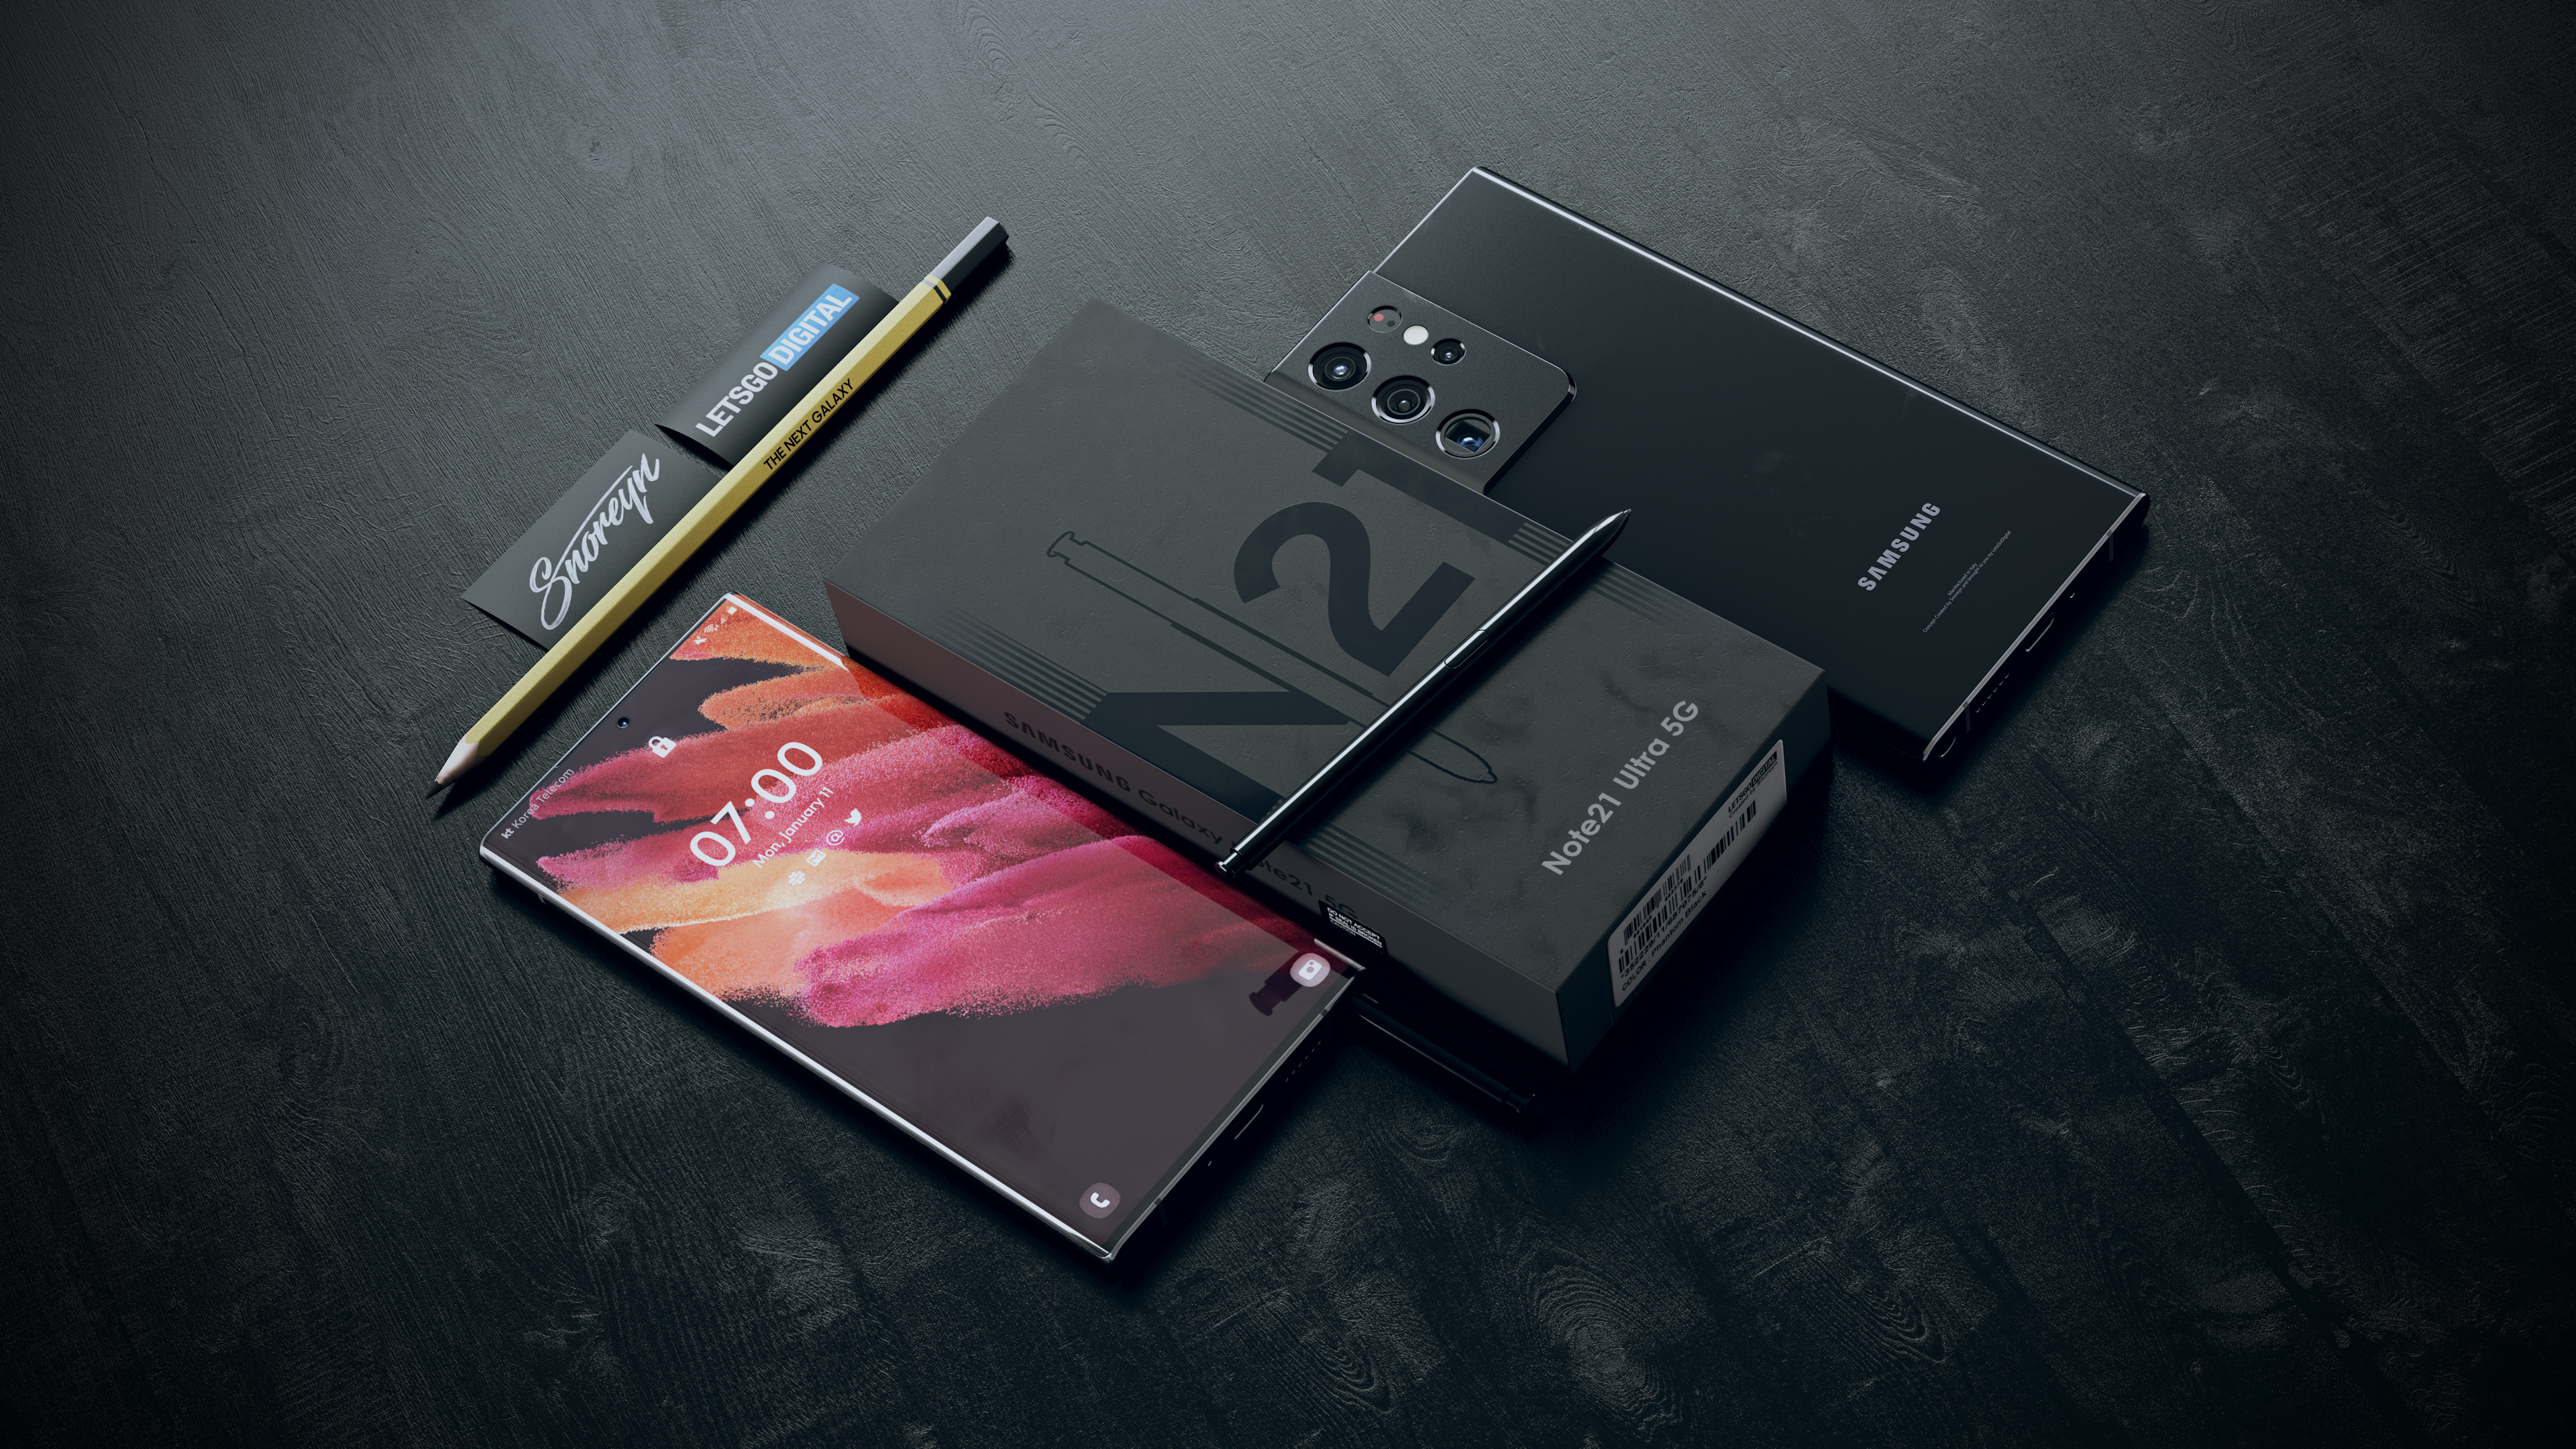 Samsung Galaxy Note 20 Ultra 512 Gb